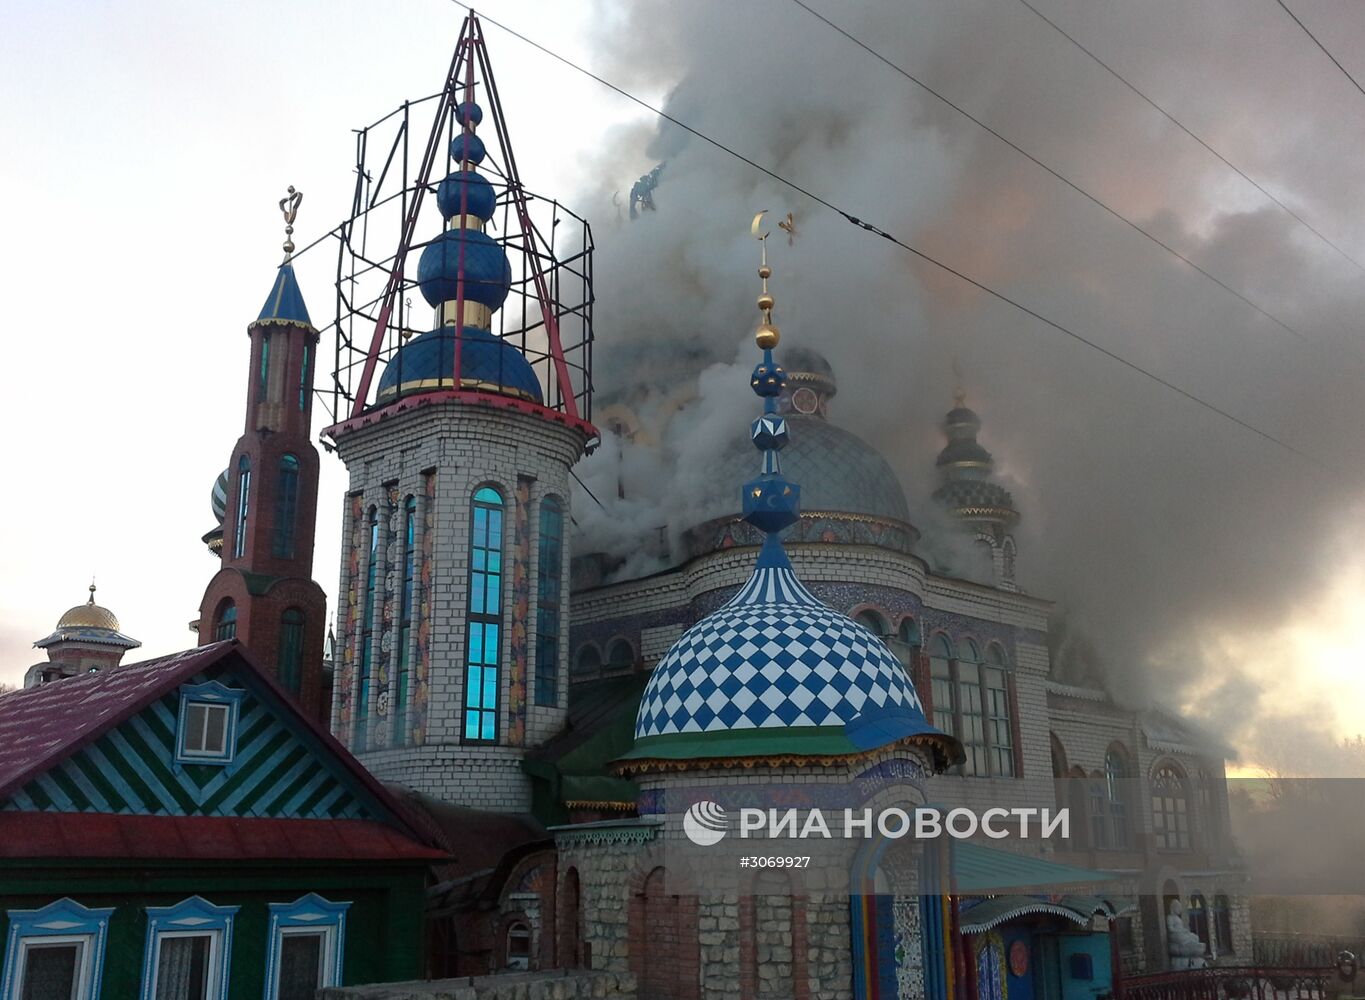 Пожар в Храме всех религий в Казани